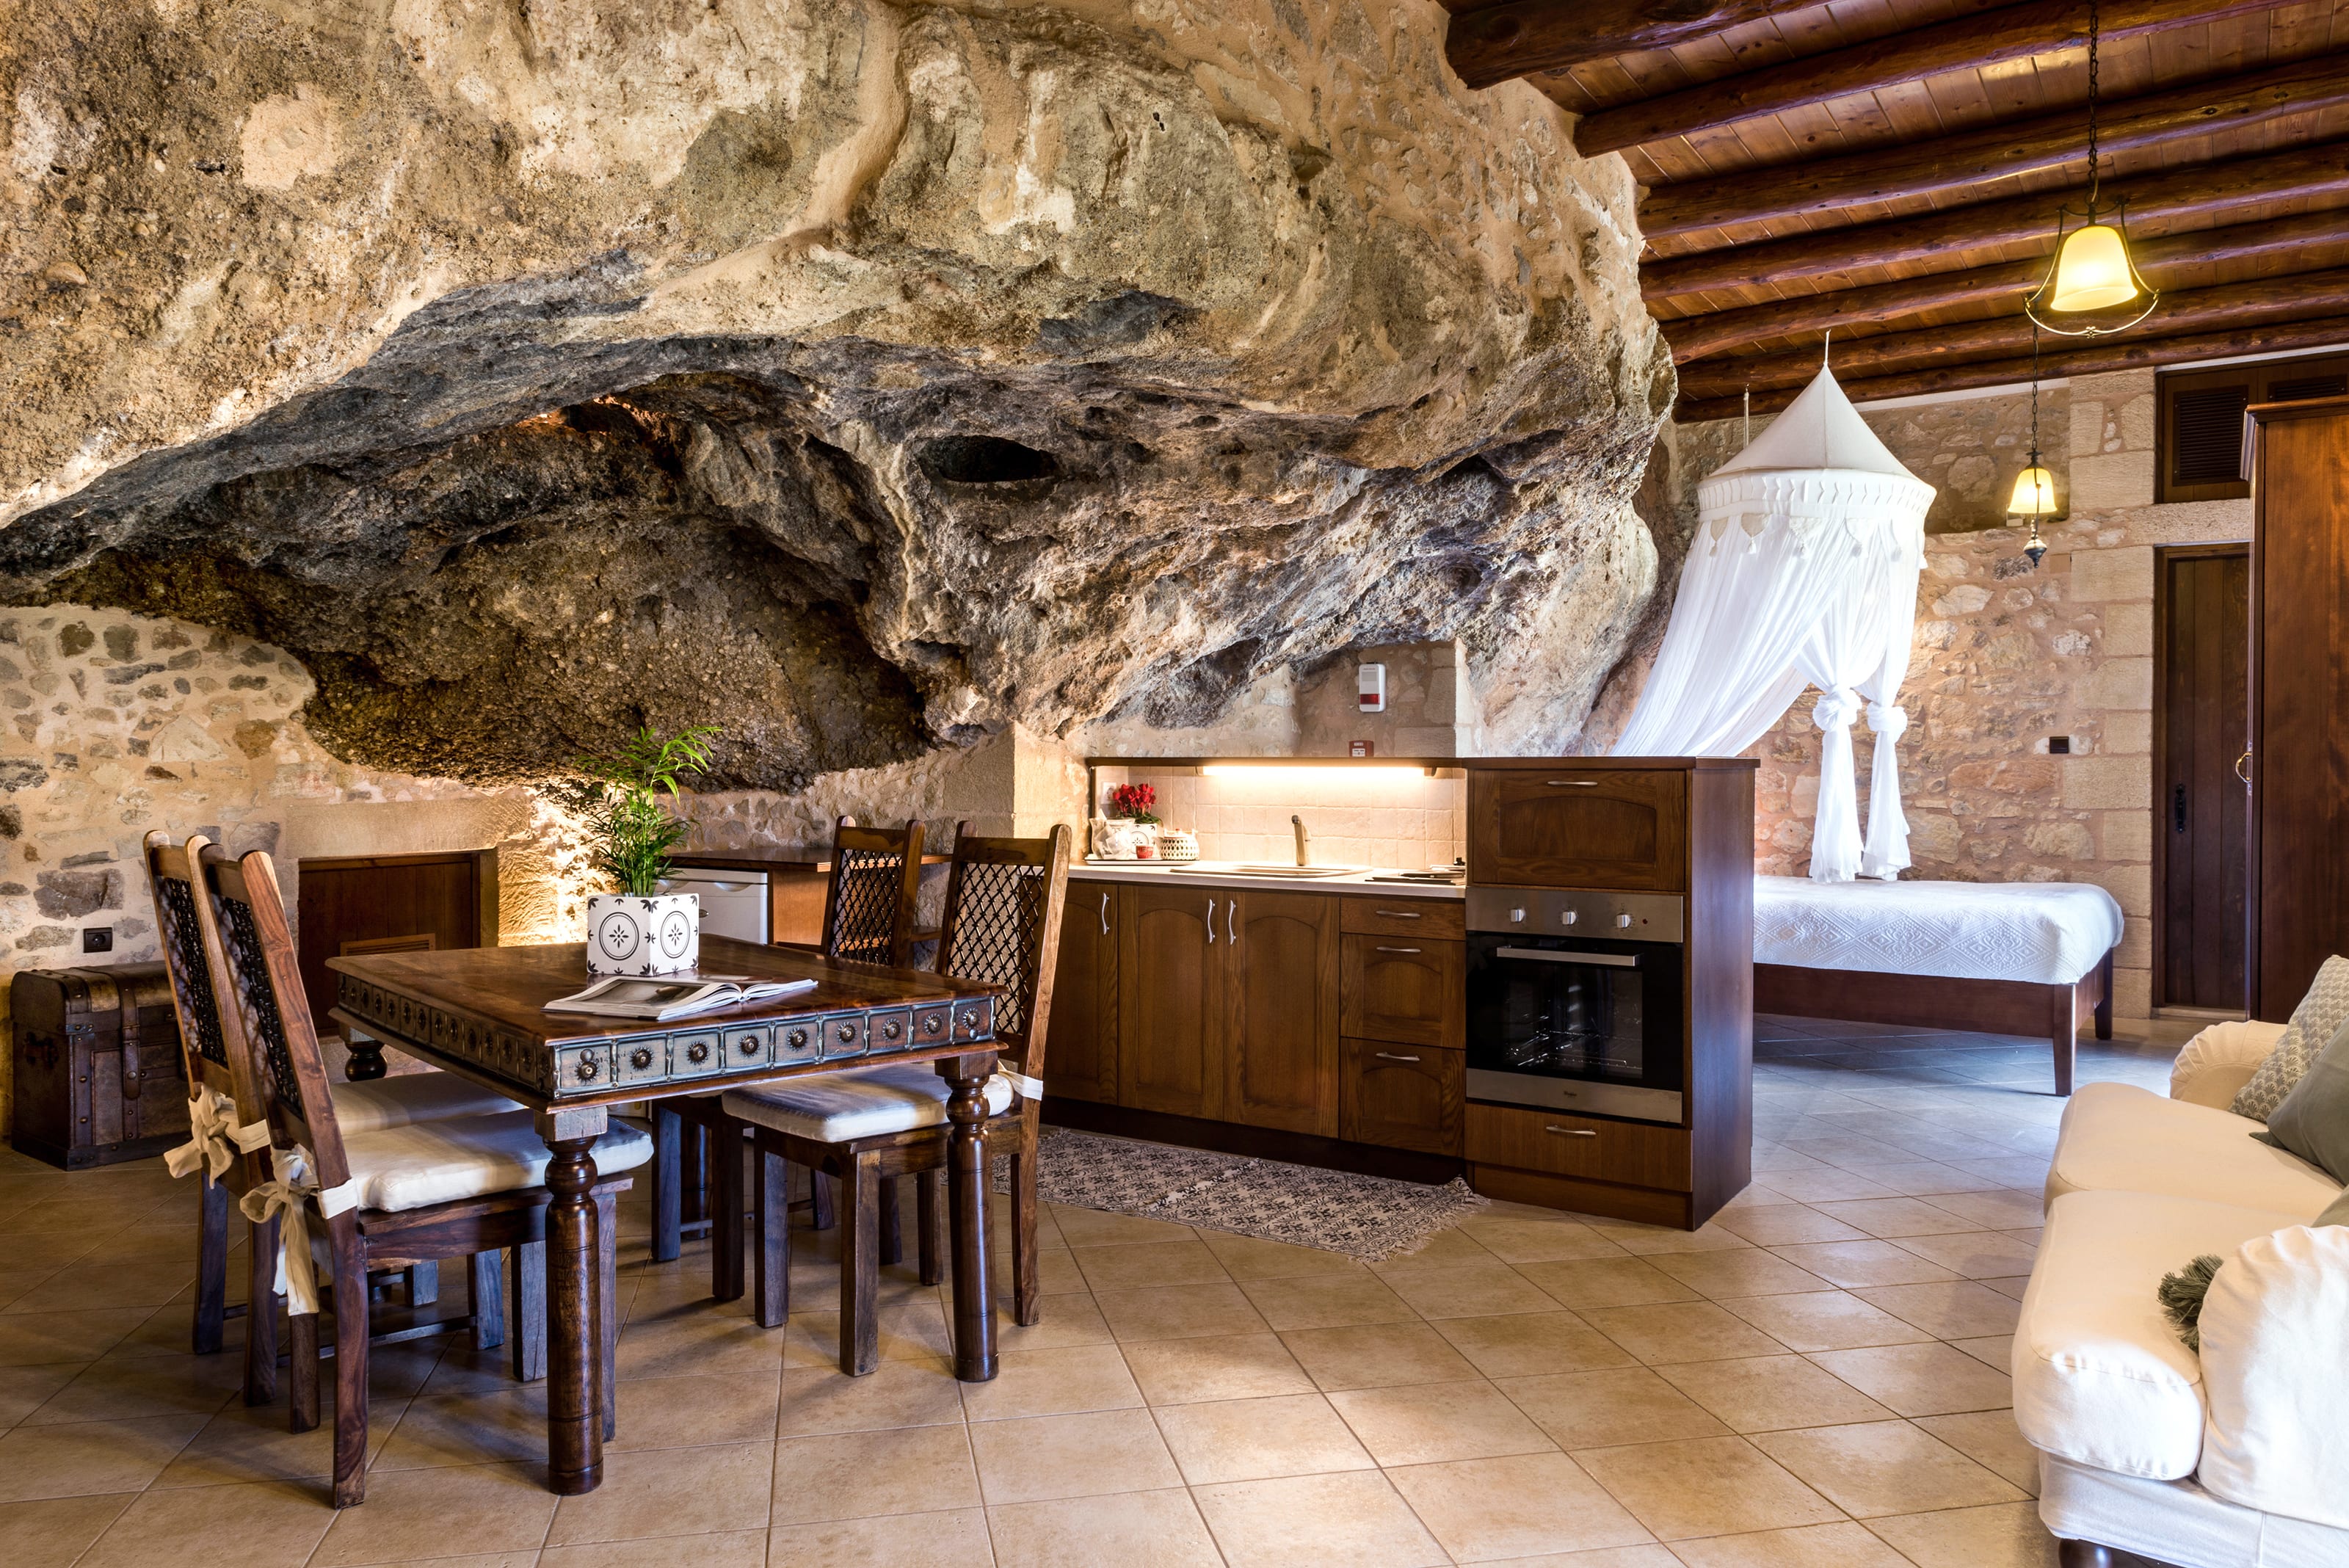 Cave home. Cave House в Испании. Анджело Мастропьетро. Дом в пещере. Жилье в пещере.